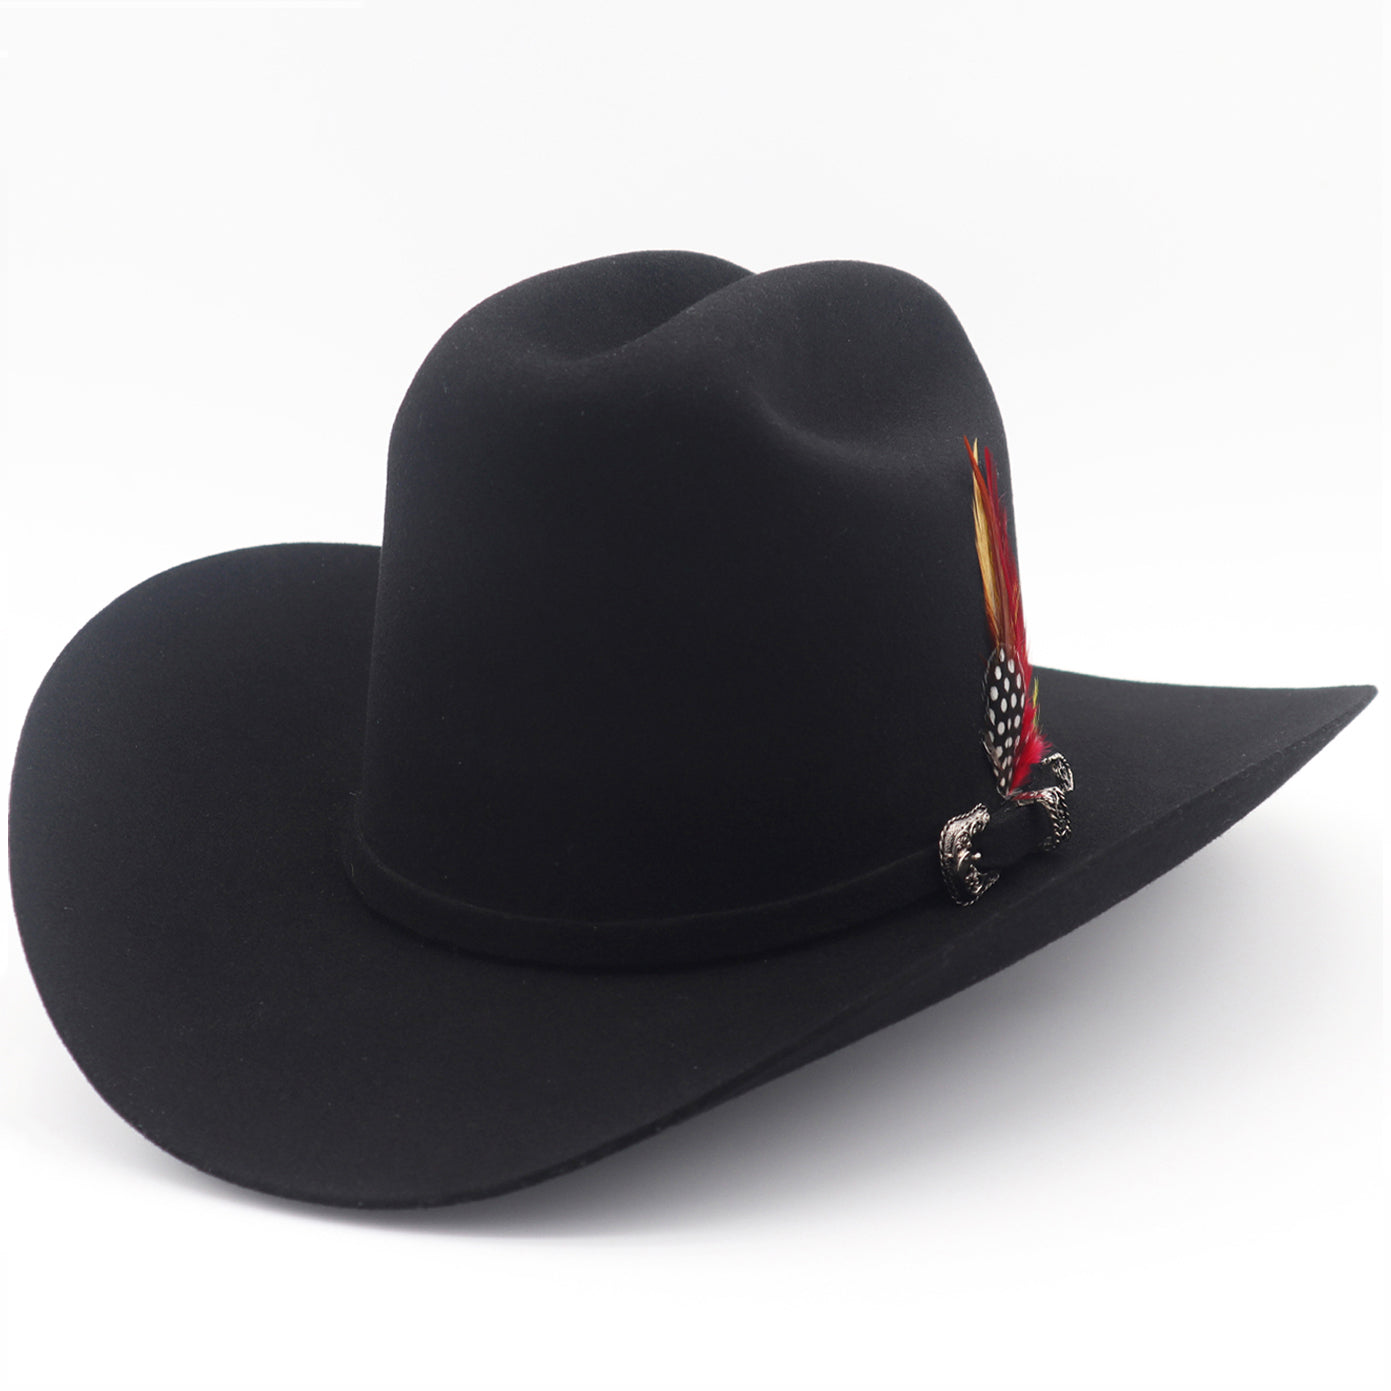 Abolengo black cowboy felt hat